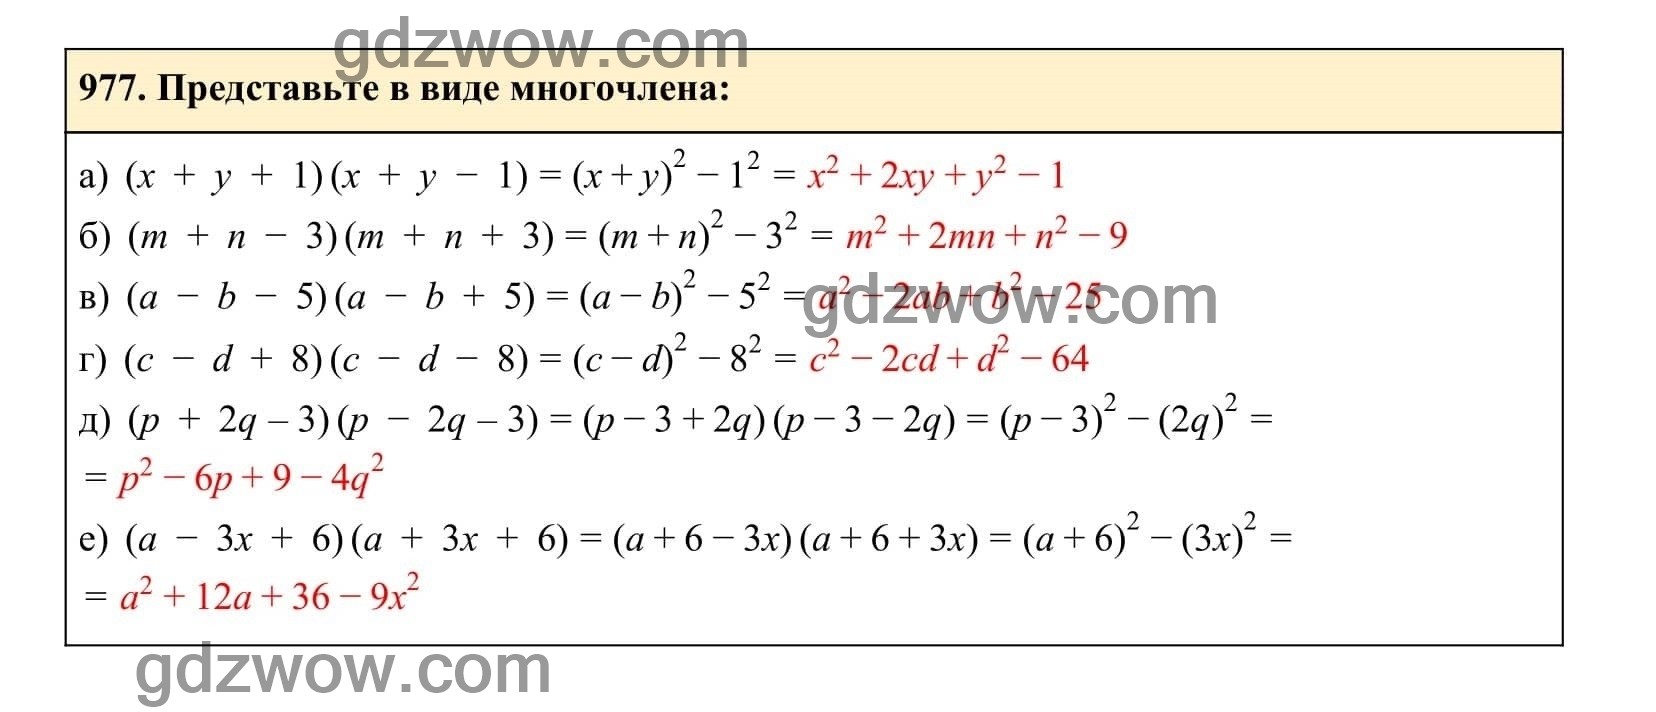 Упражнение 977 - ГДЗ по Алгебре 7 класс Учебник Макарычев (решебник) - GDZwow